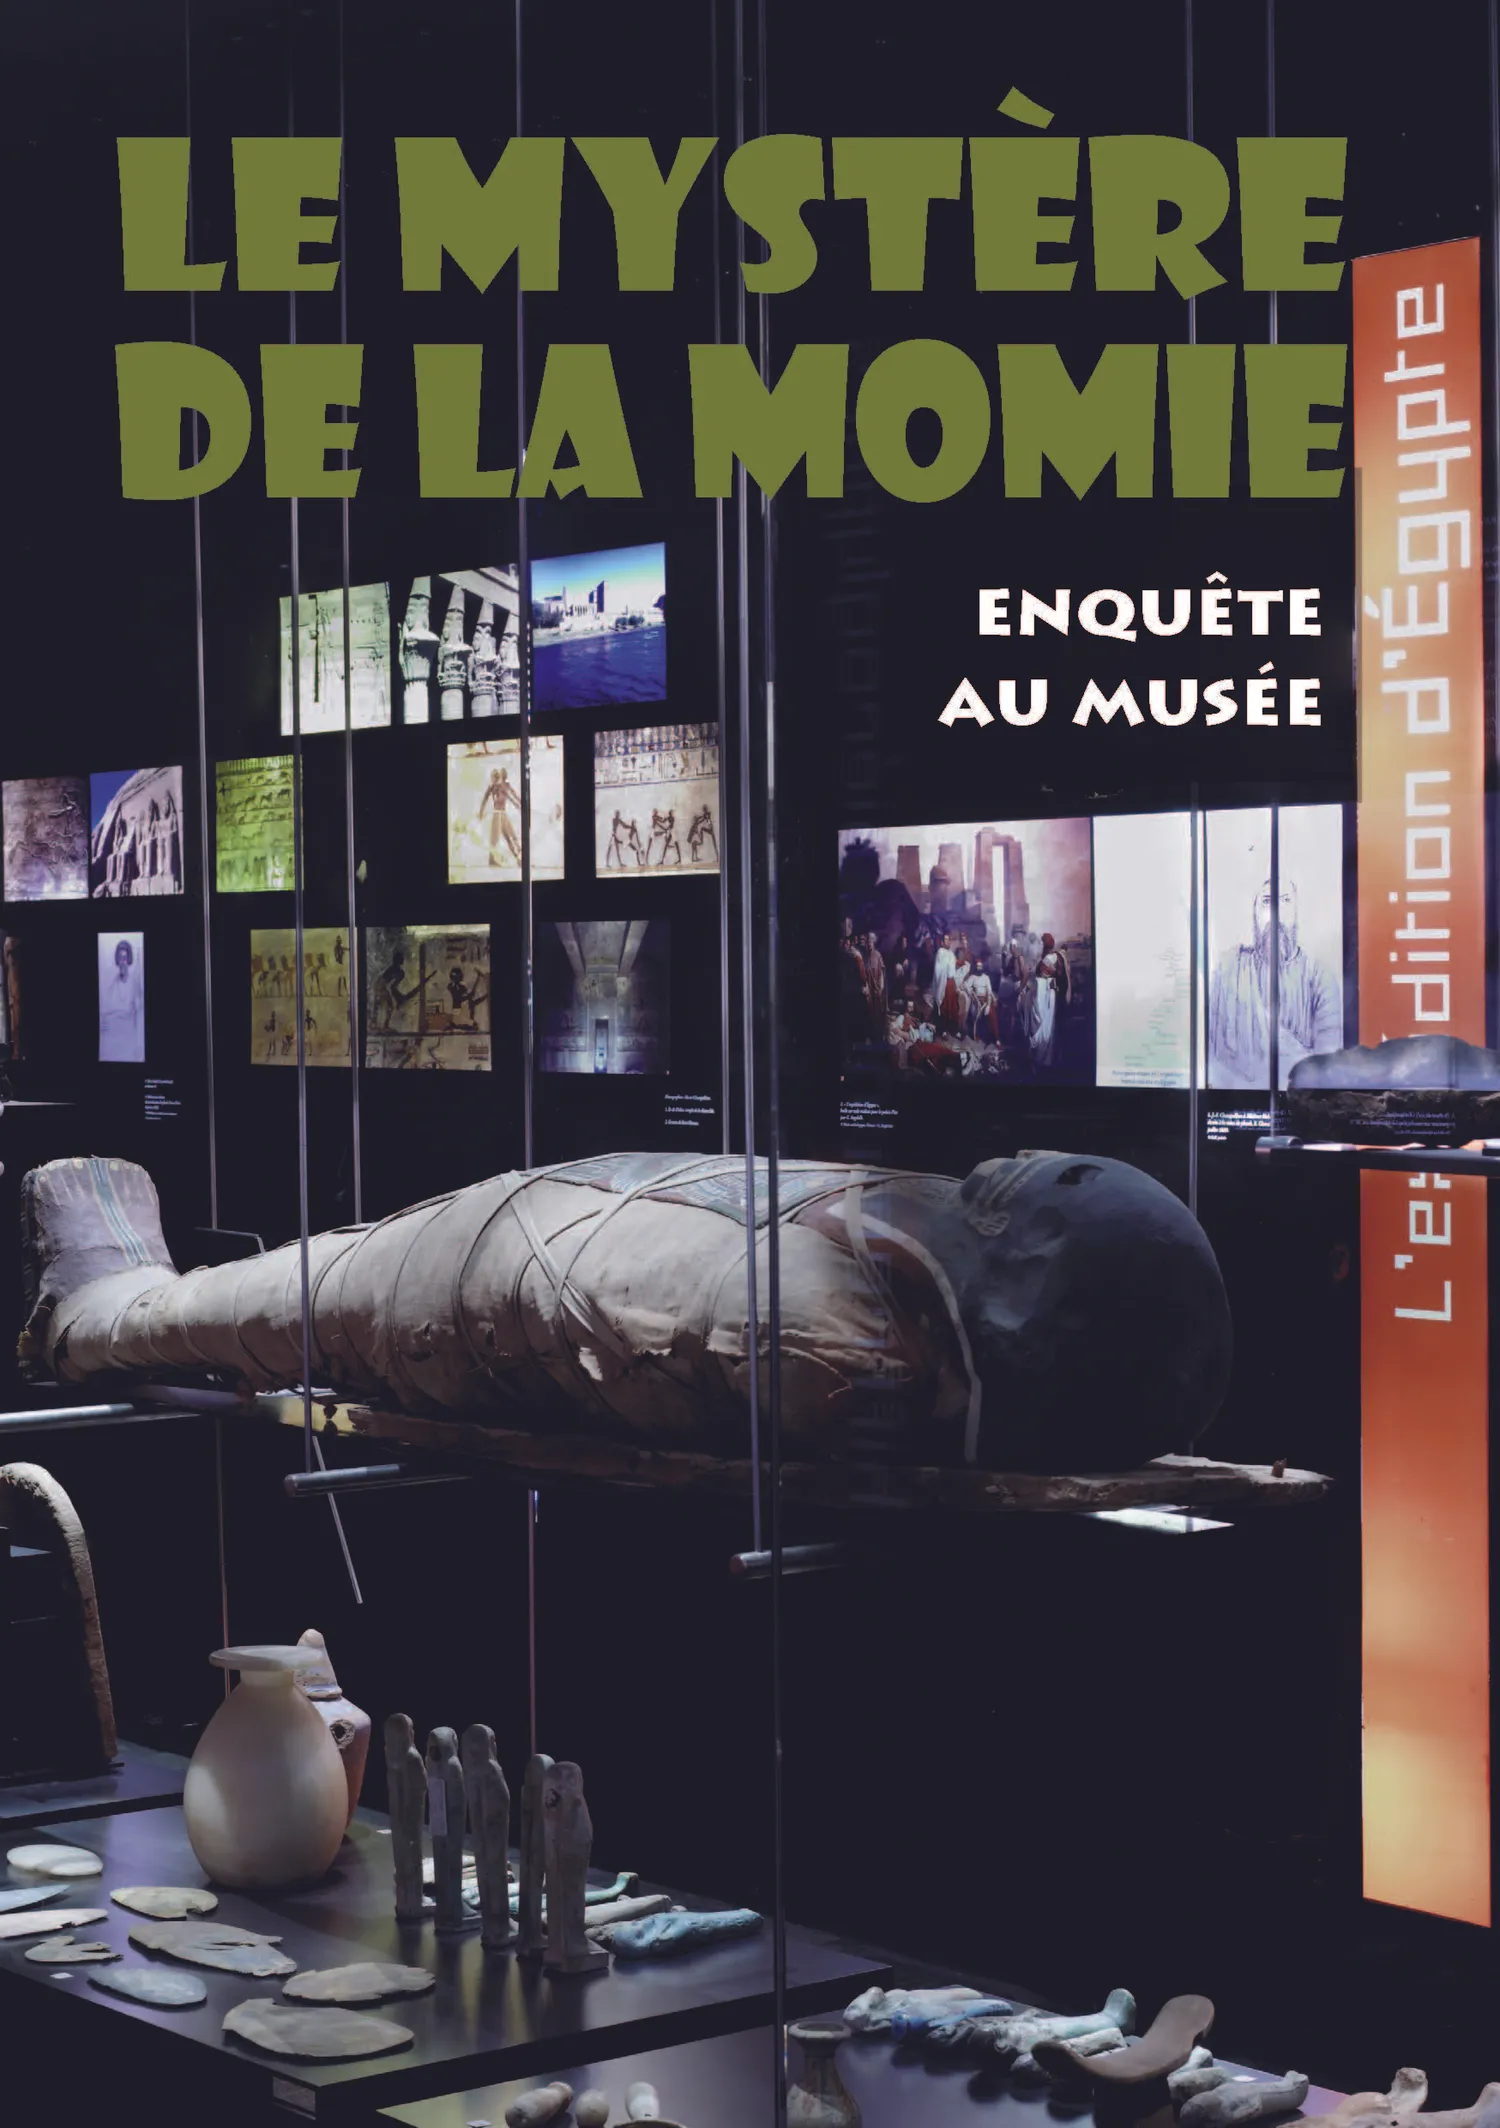 Image qui illustre: Visite-jeu "le Mystère De La Momie" à Figeac - 1